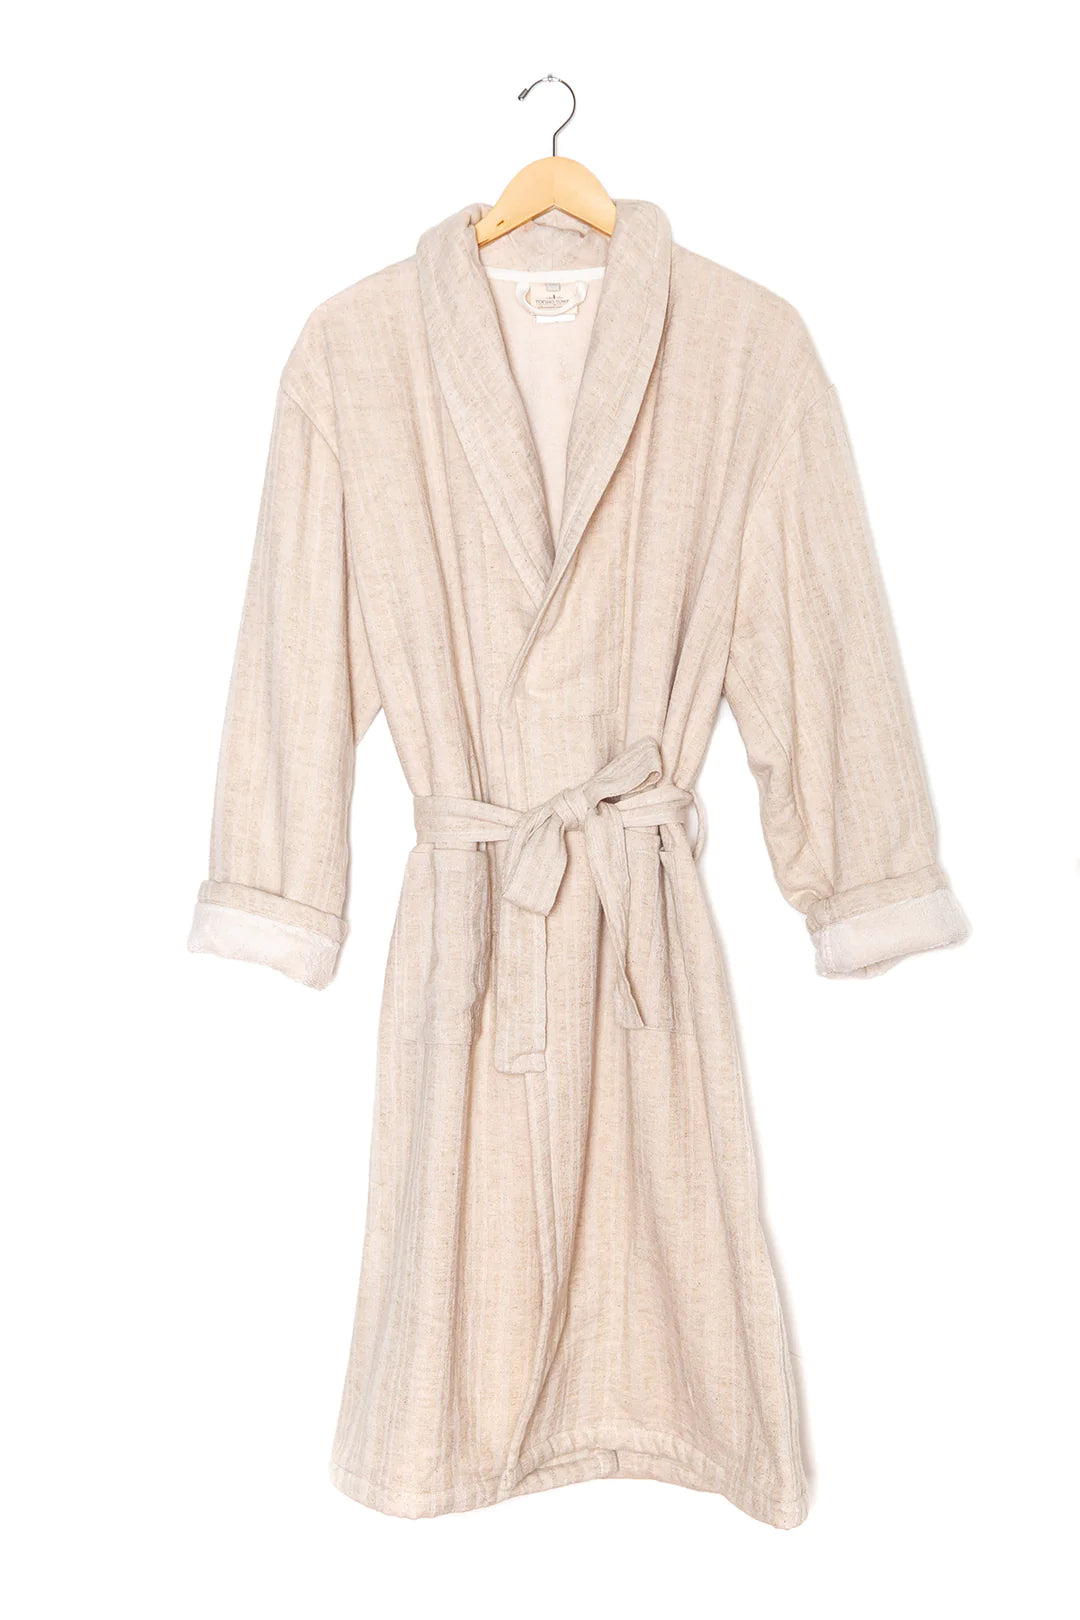 The Celeste Bath Robe | L/XL